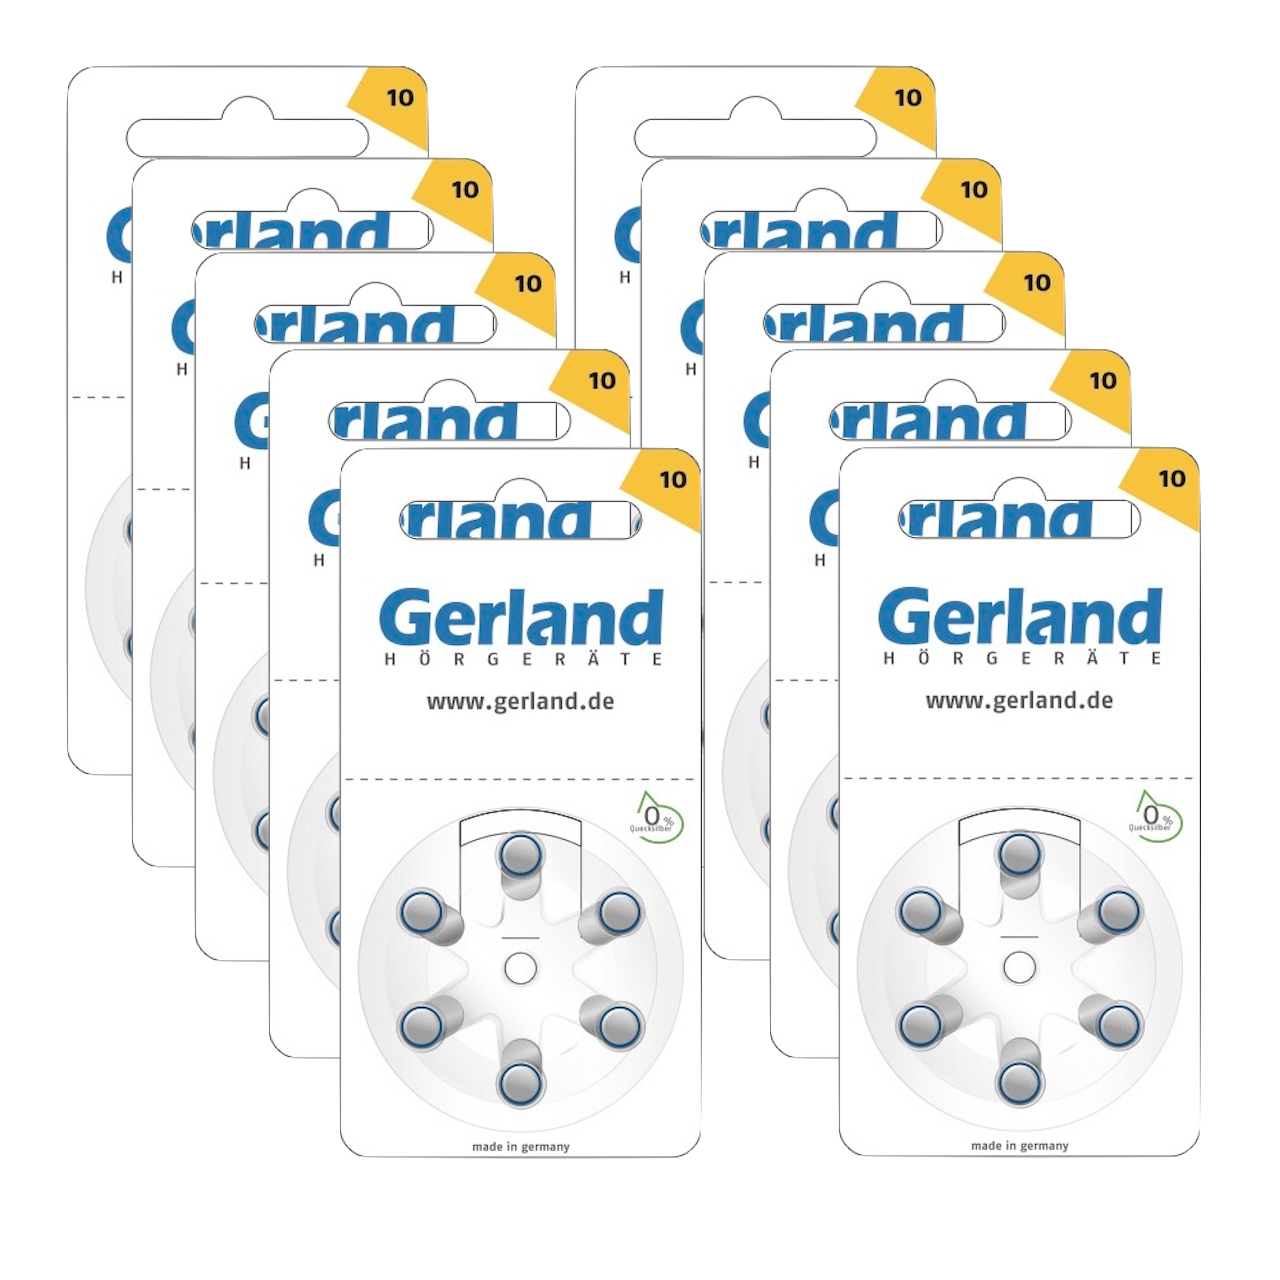 Mit den Hörgerätebatterien p10 (gelb) im 60er Pack von Gerland erhalten Sie hohe Qualität zum günstigen Preis 